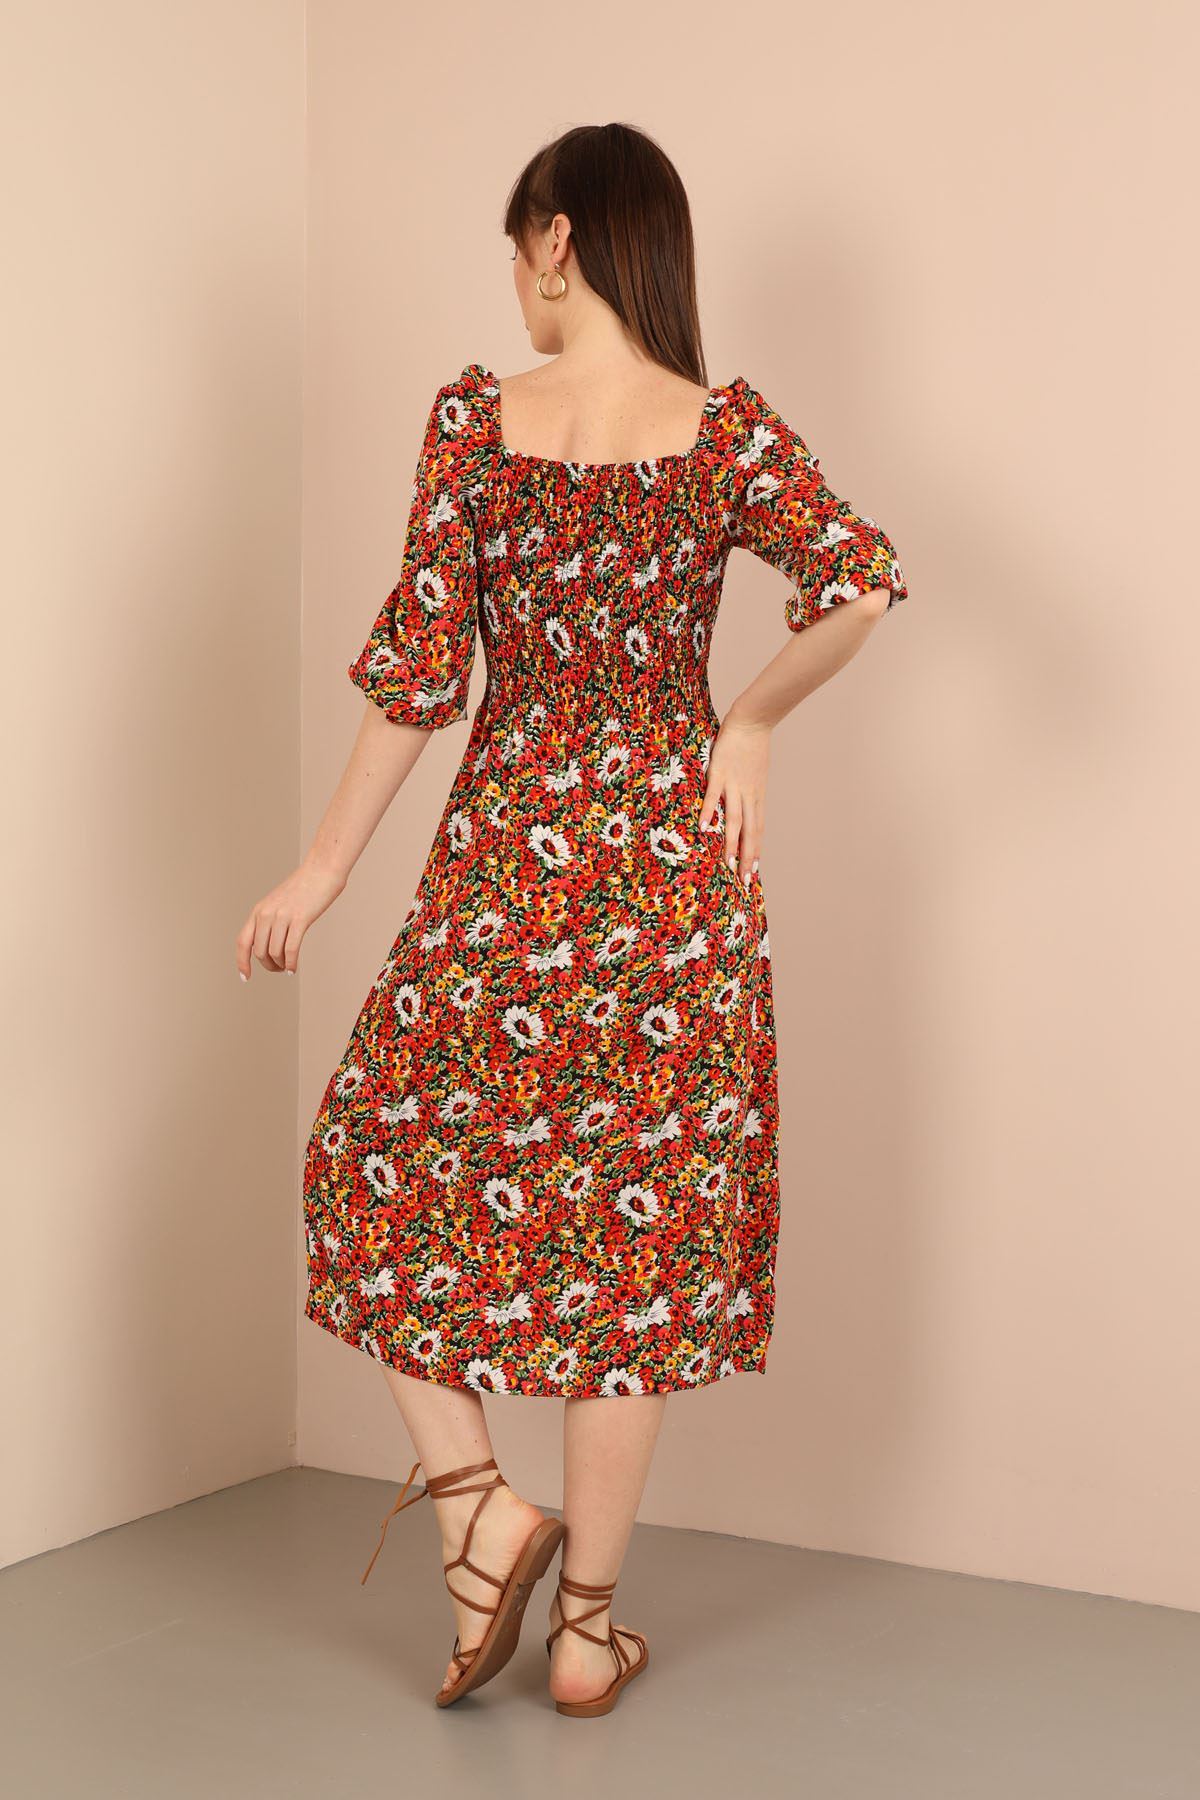 Viscose Fabric Square Neckline Midi Floral Print Women Dress - Red